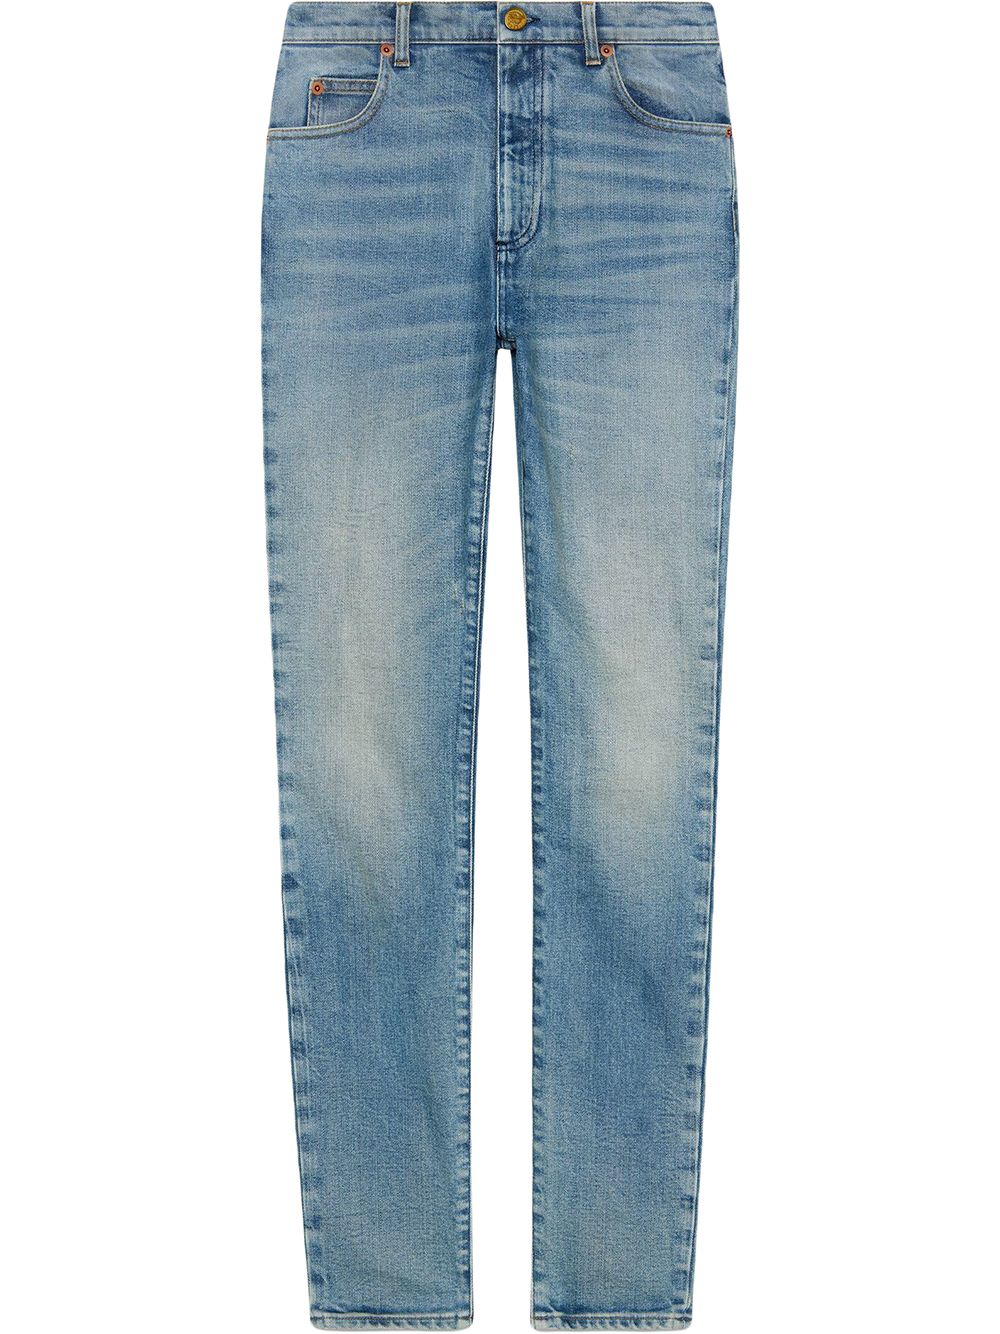 Jeans in denim taglio skinny